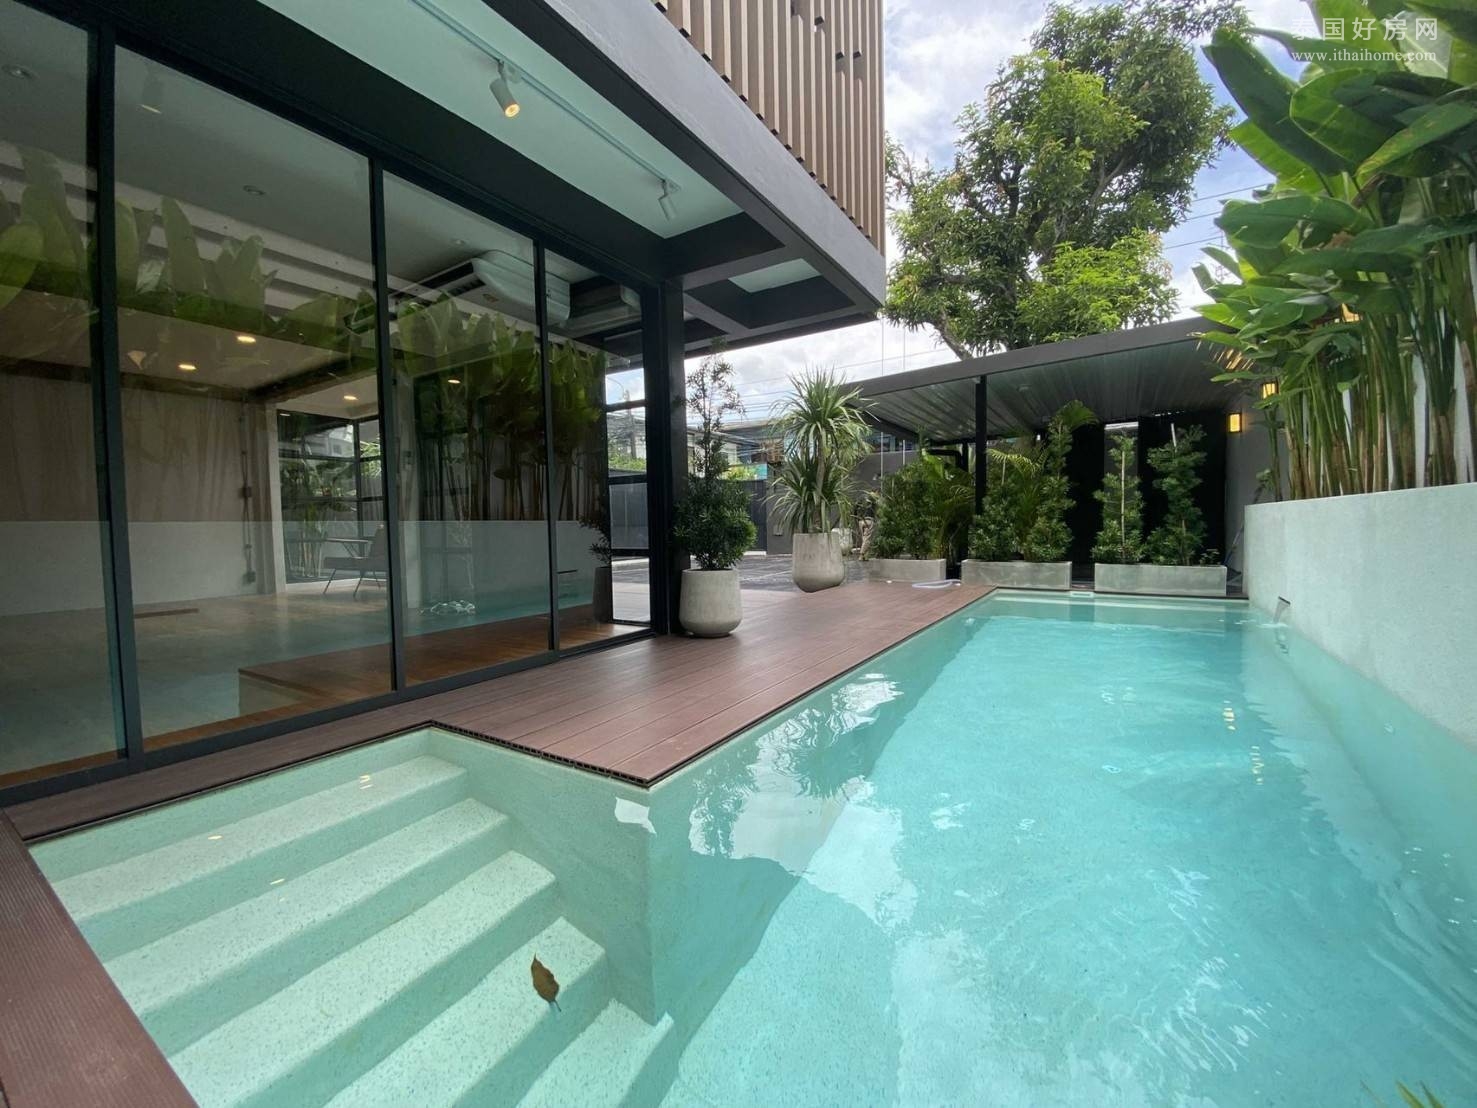 【推荐】曼谷Sukhumvit 71独栋别墅出售 4卧292平米 15,000铢/月 售价2,550万泰铢